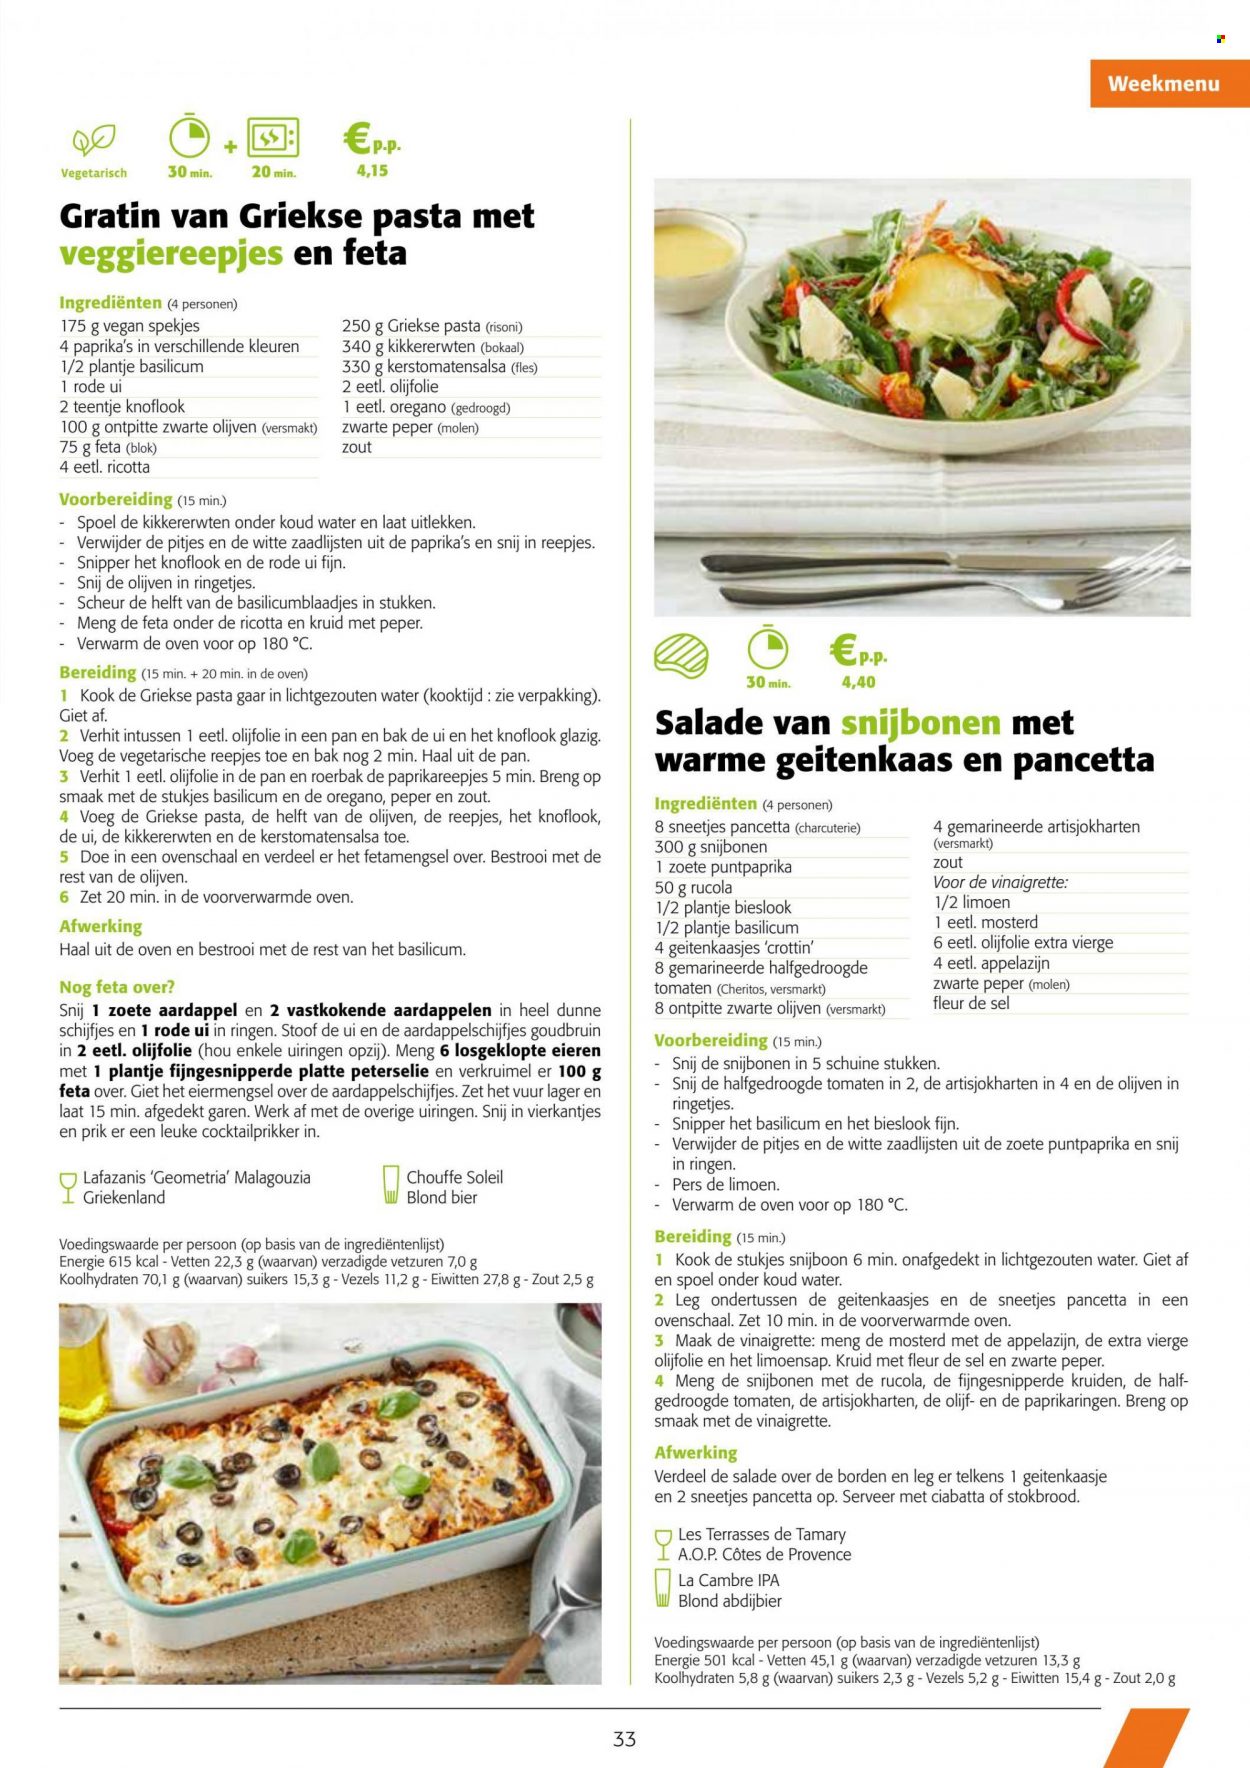 thumbnail - Colruyt-aanbieding - 18/05/2022 - 31/05/2022 -  producten in de aanbieding - bier, stokbrood, ciabatta, aardappelen, bieslook, knoflook, puntpaprika, rode ui, rucola, snijbonen, uien, peterselie, limoen, vegetarisch eten, pancetta, Crottin, ricotta, Feta, vinaigrette, kikkererwten, olijven, pasta, basilicum, oregano, zwarte peper, mosterd, olijfolie, olijfolie extra vierge, Côtes de Provence, pan. Pagina 2.